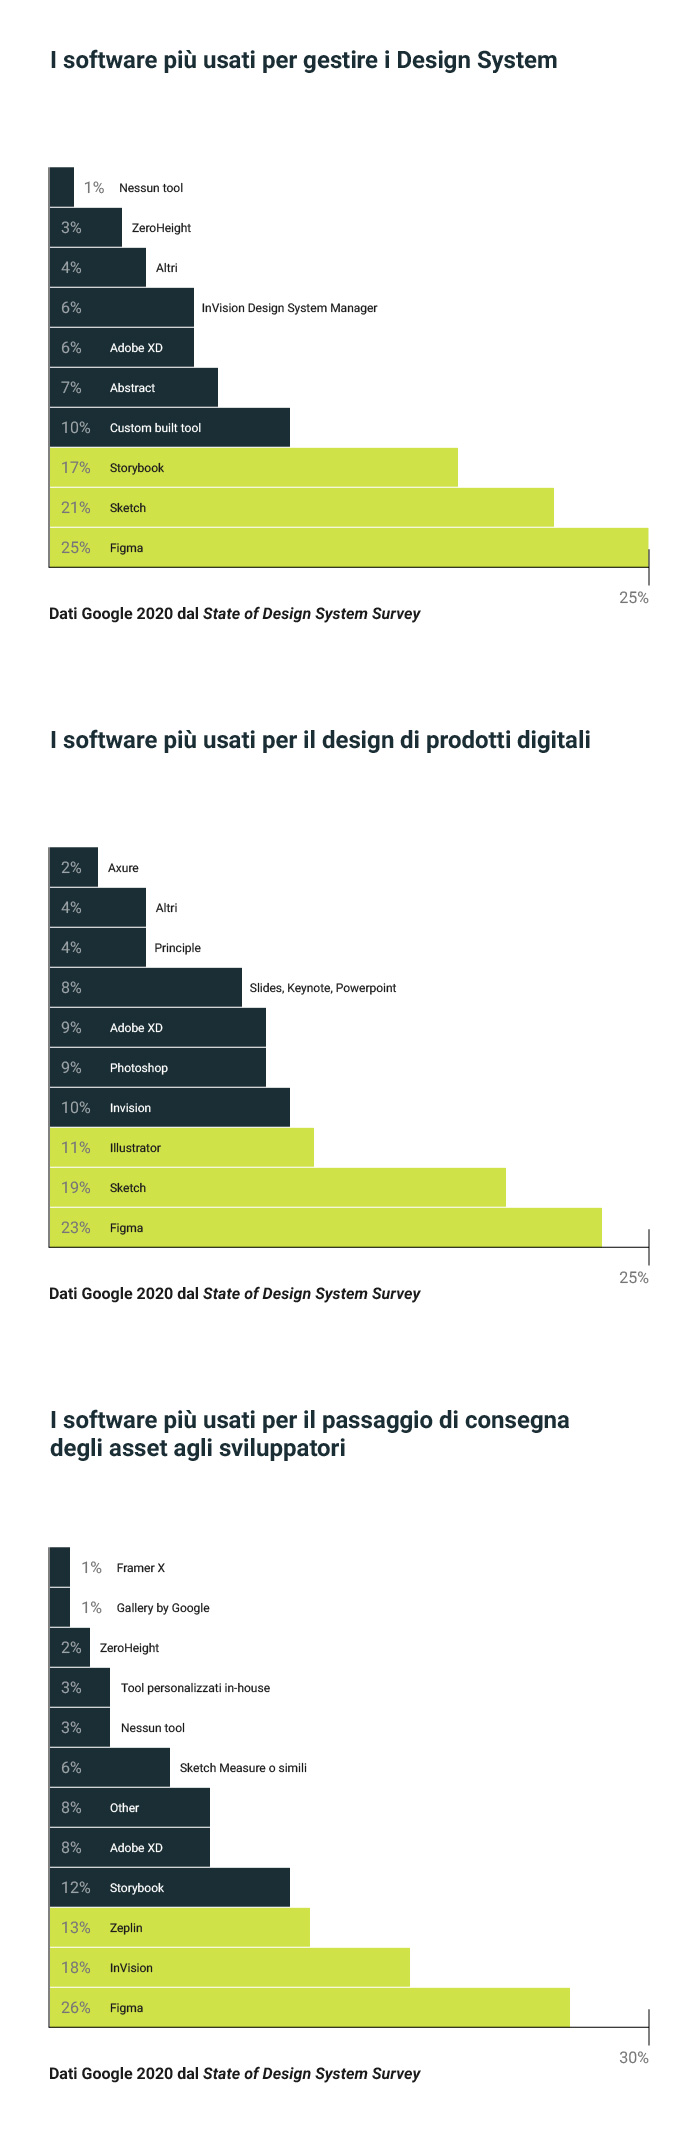 Grafico delle percentuali dei software più diffusi